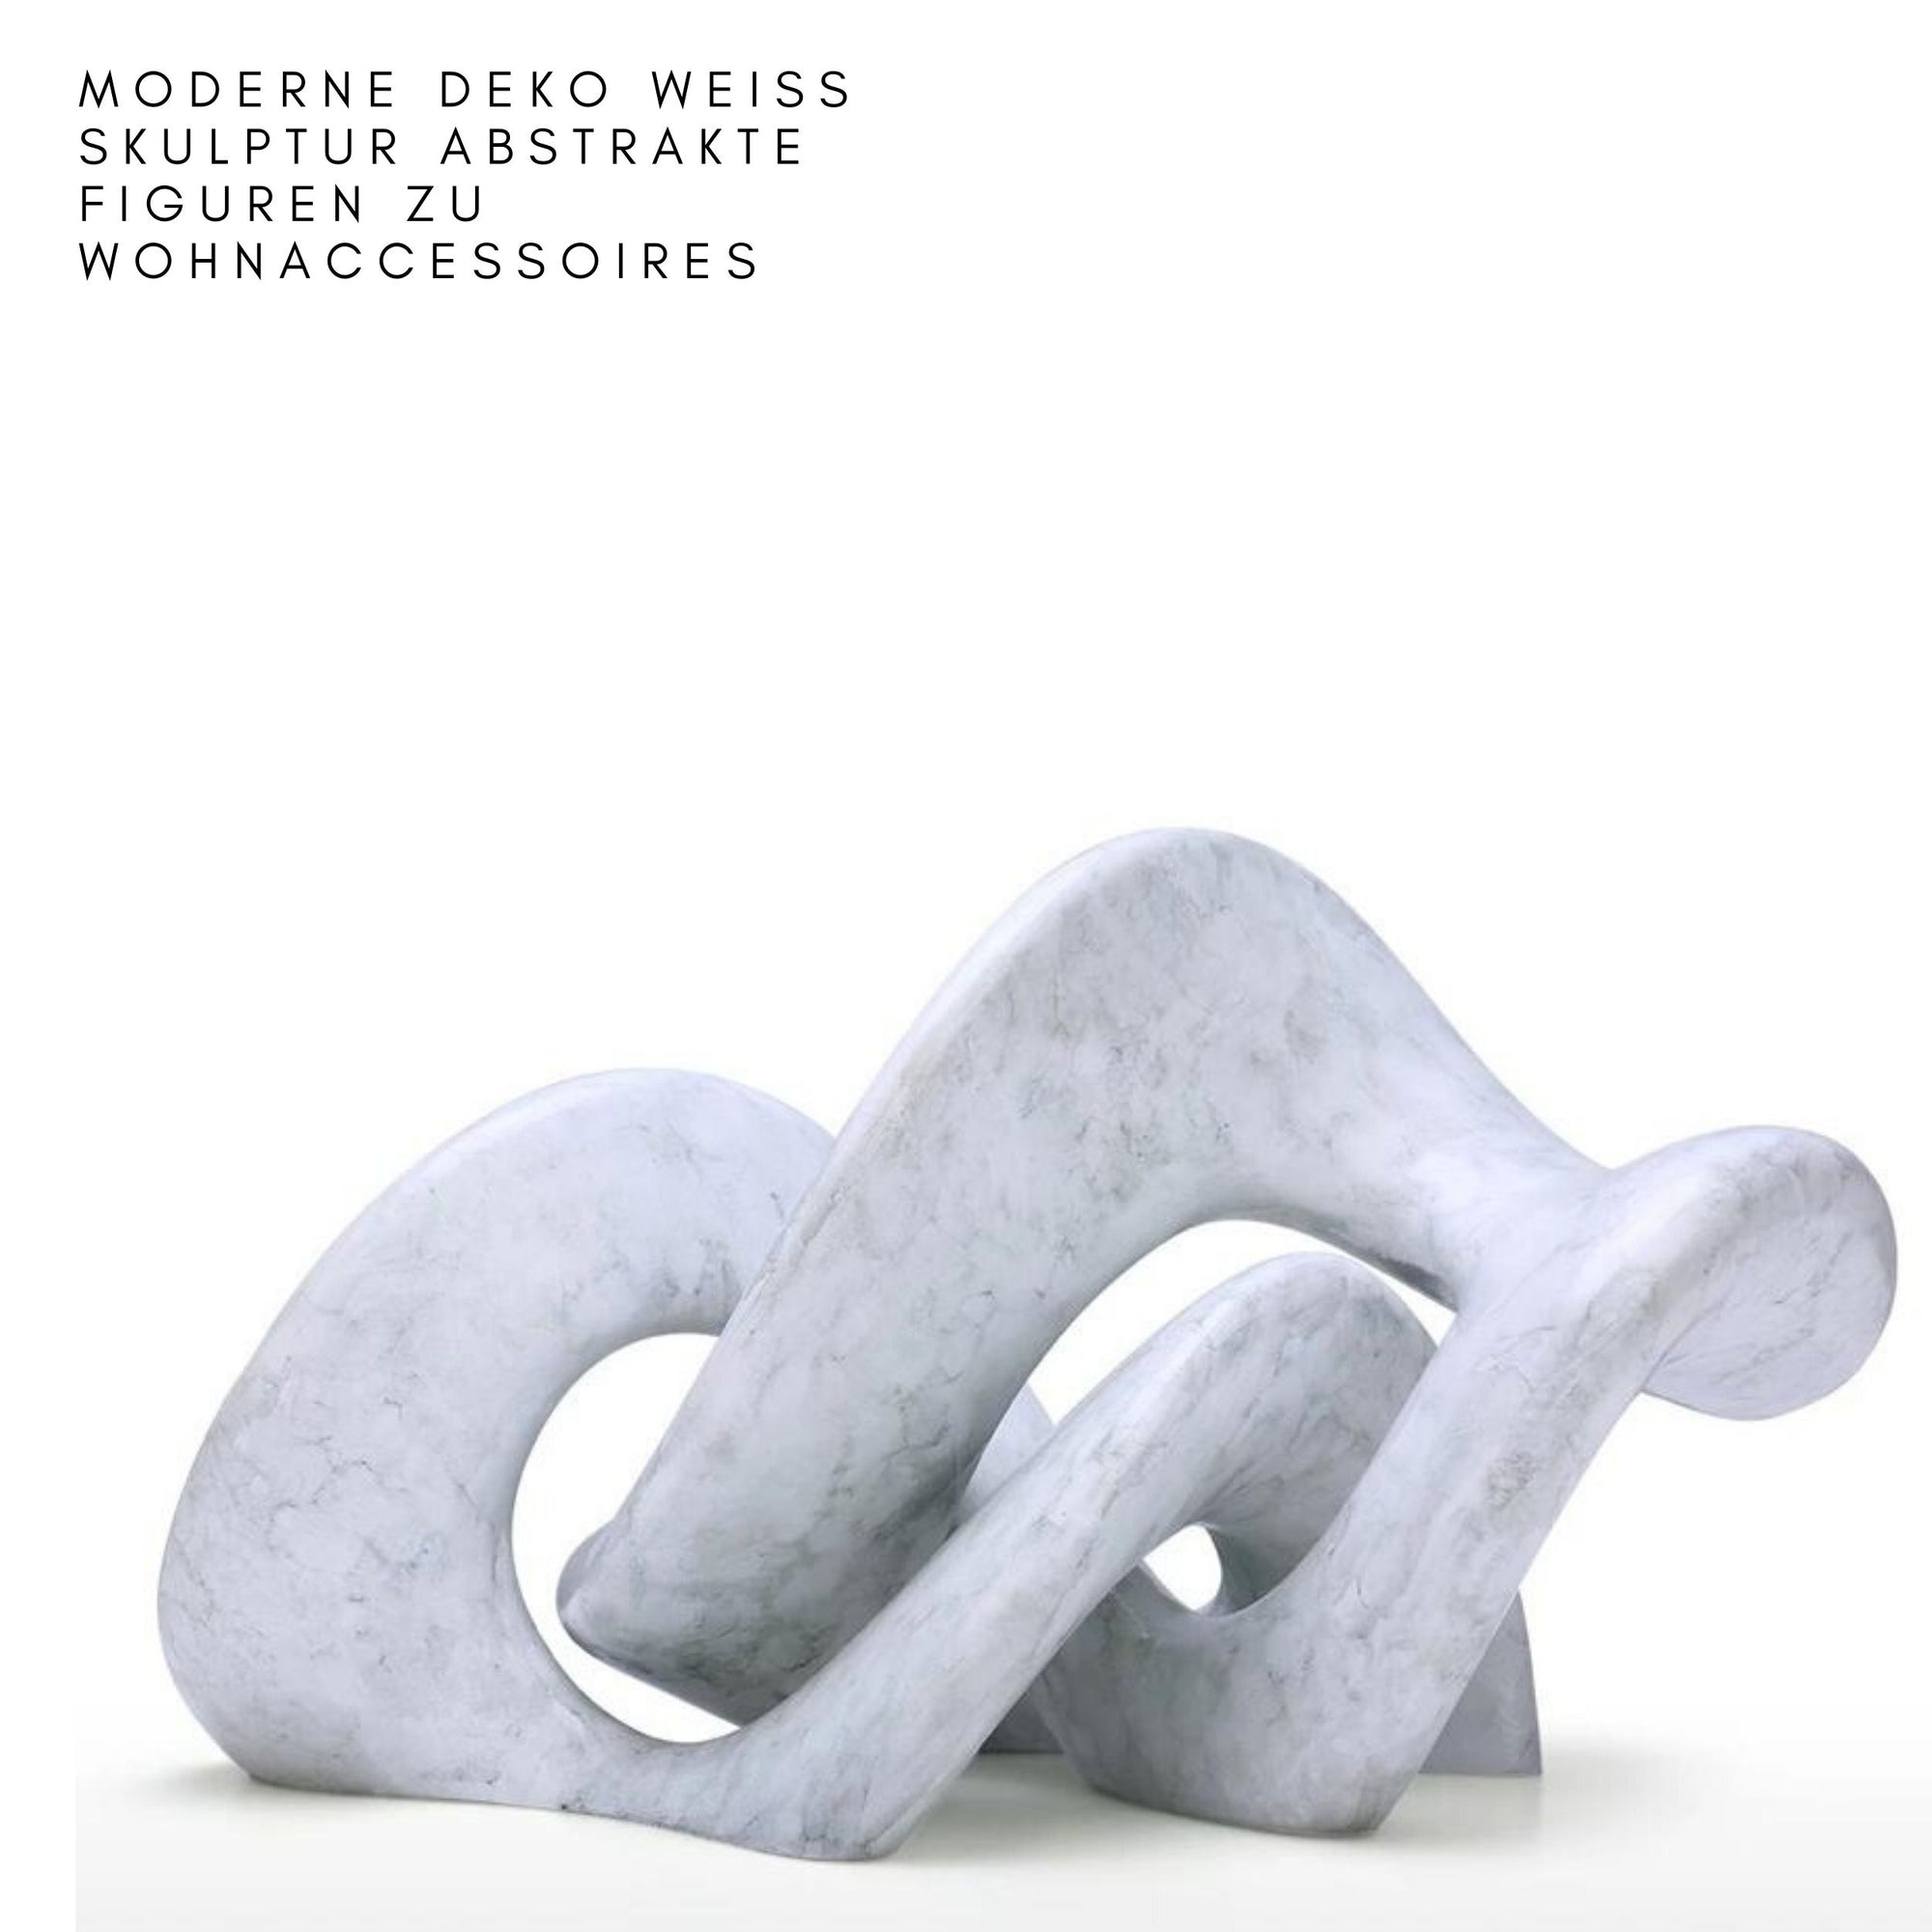 Moderne Deko Weiß Skulptur Abstrakte Figuren zu Wohnaccessoires